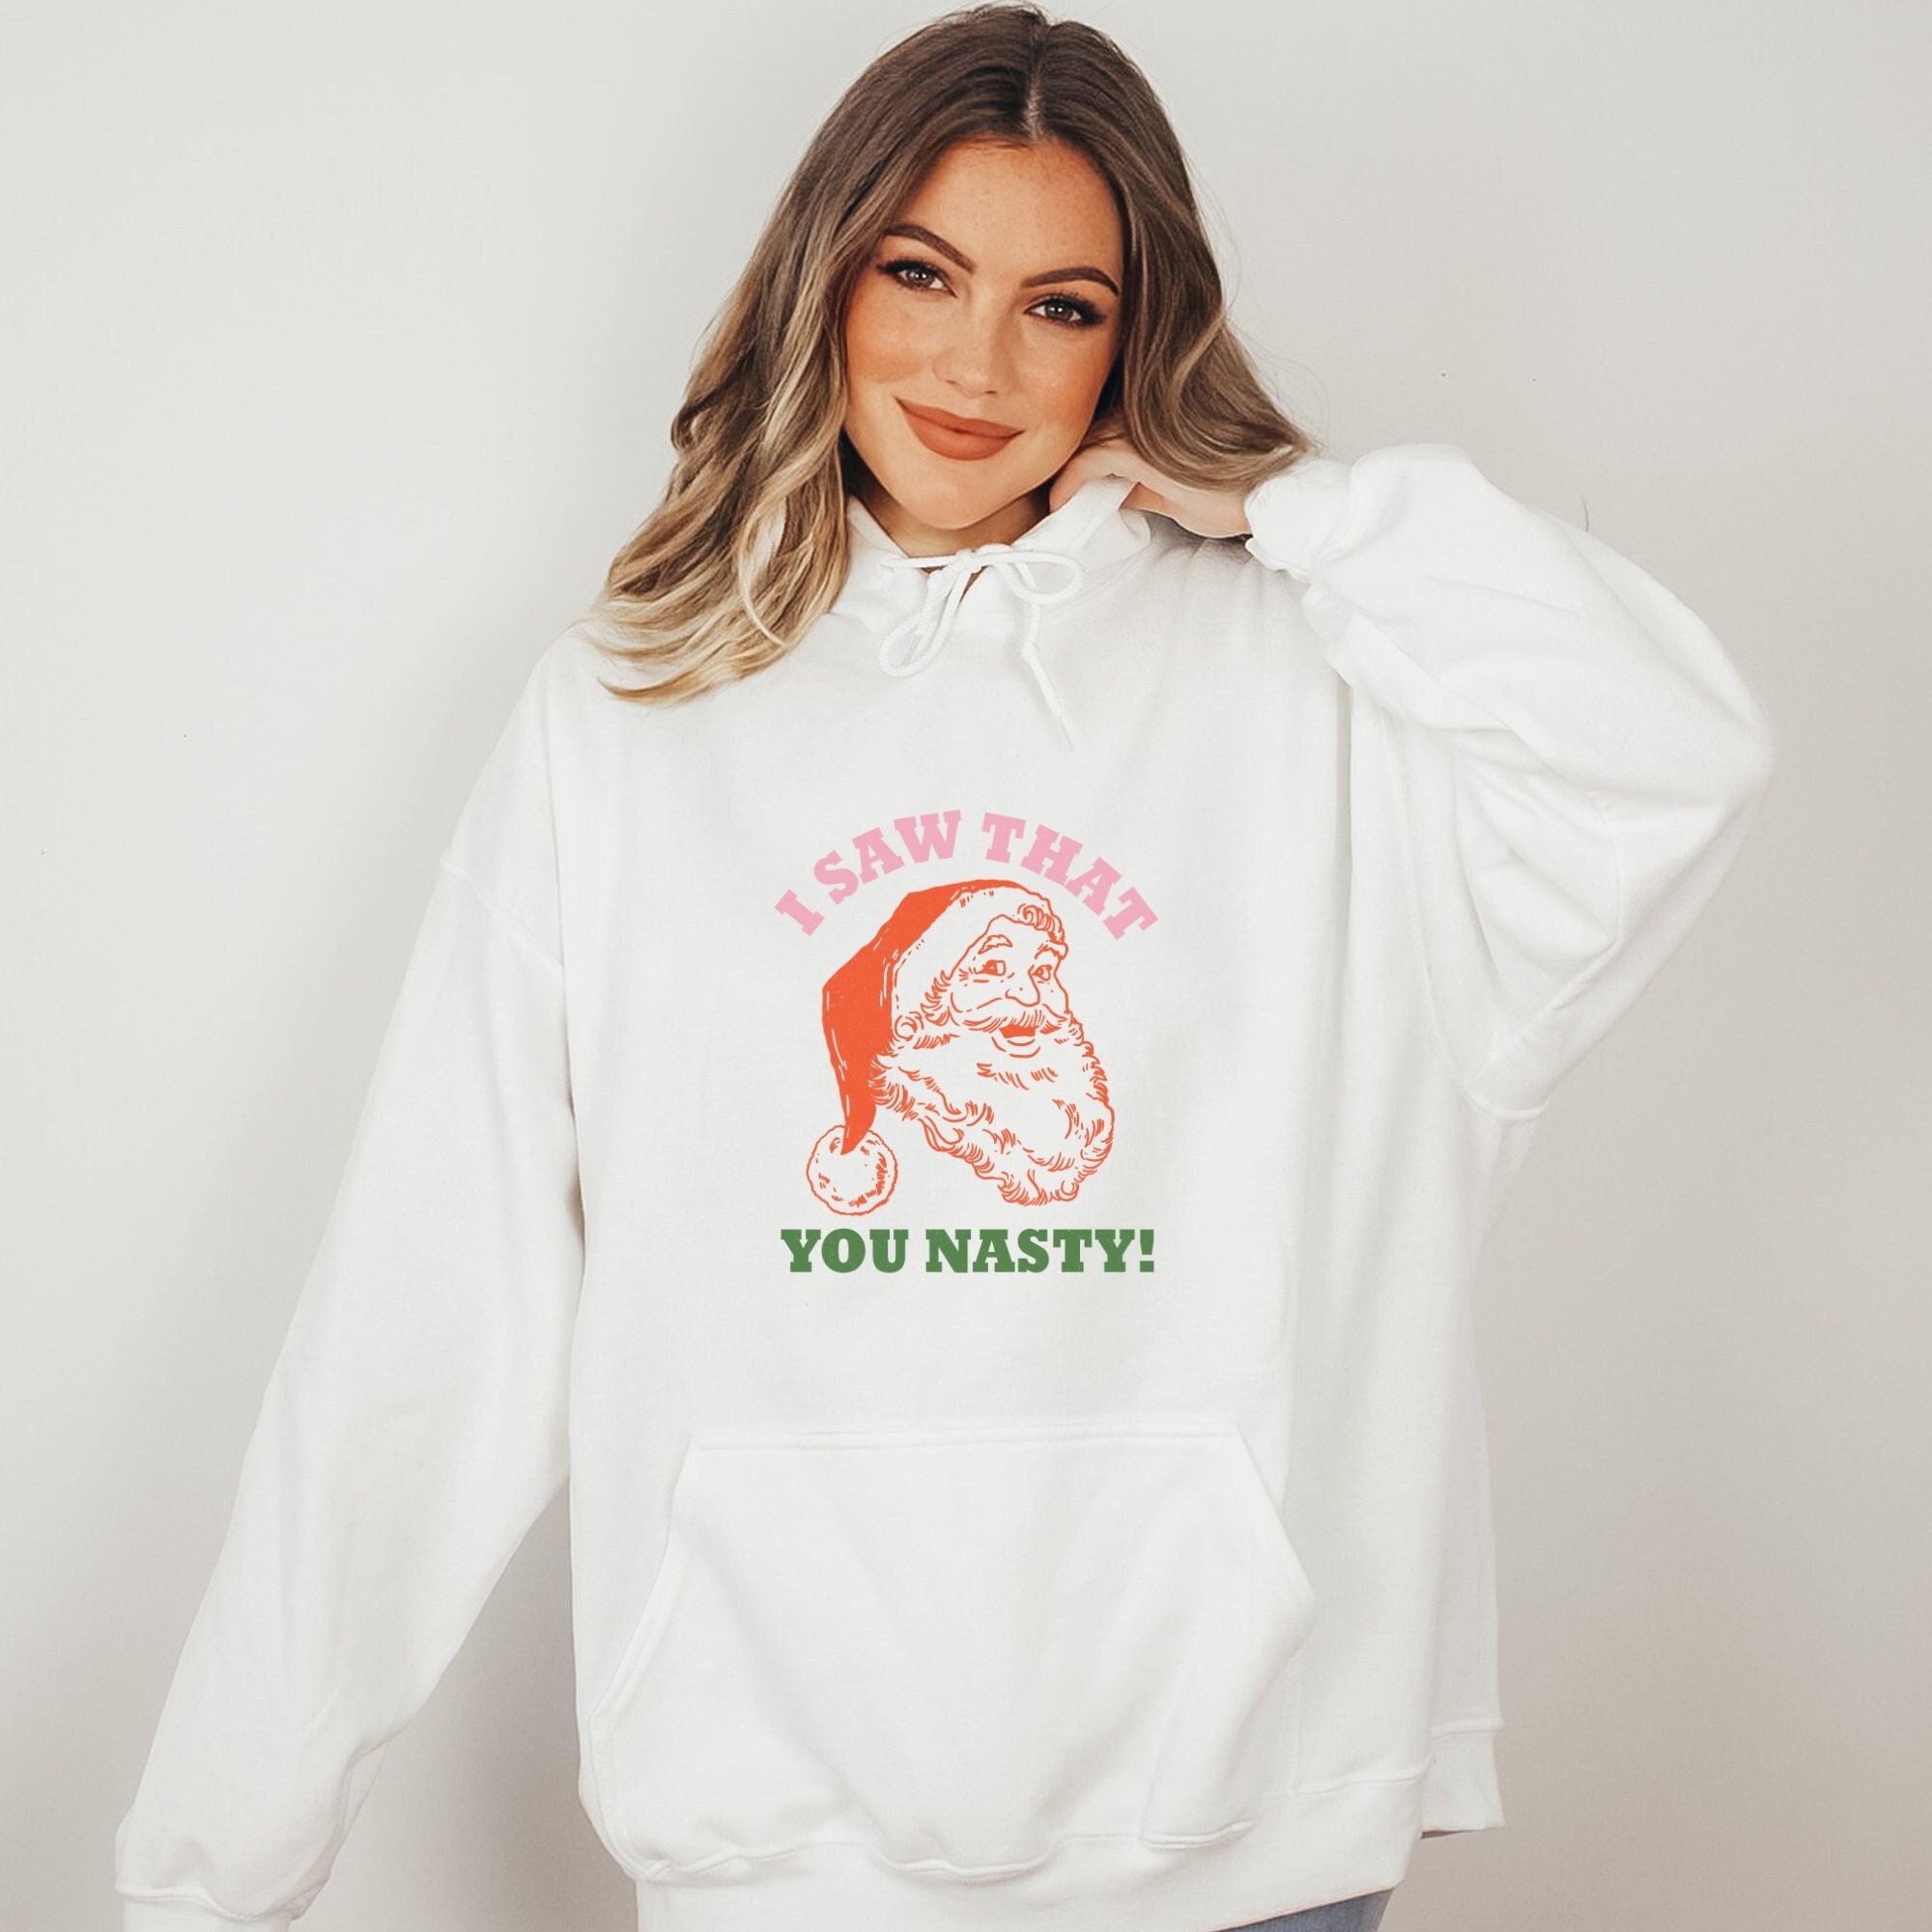 Christmas Sweatshirt | Holiday Sweatshirt | Christmas Gift | Christmas Sweater | Christmas Shirt | Christmas Funny Tee | Funny Sweatshirt